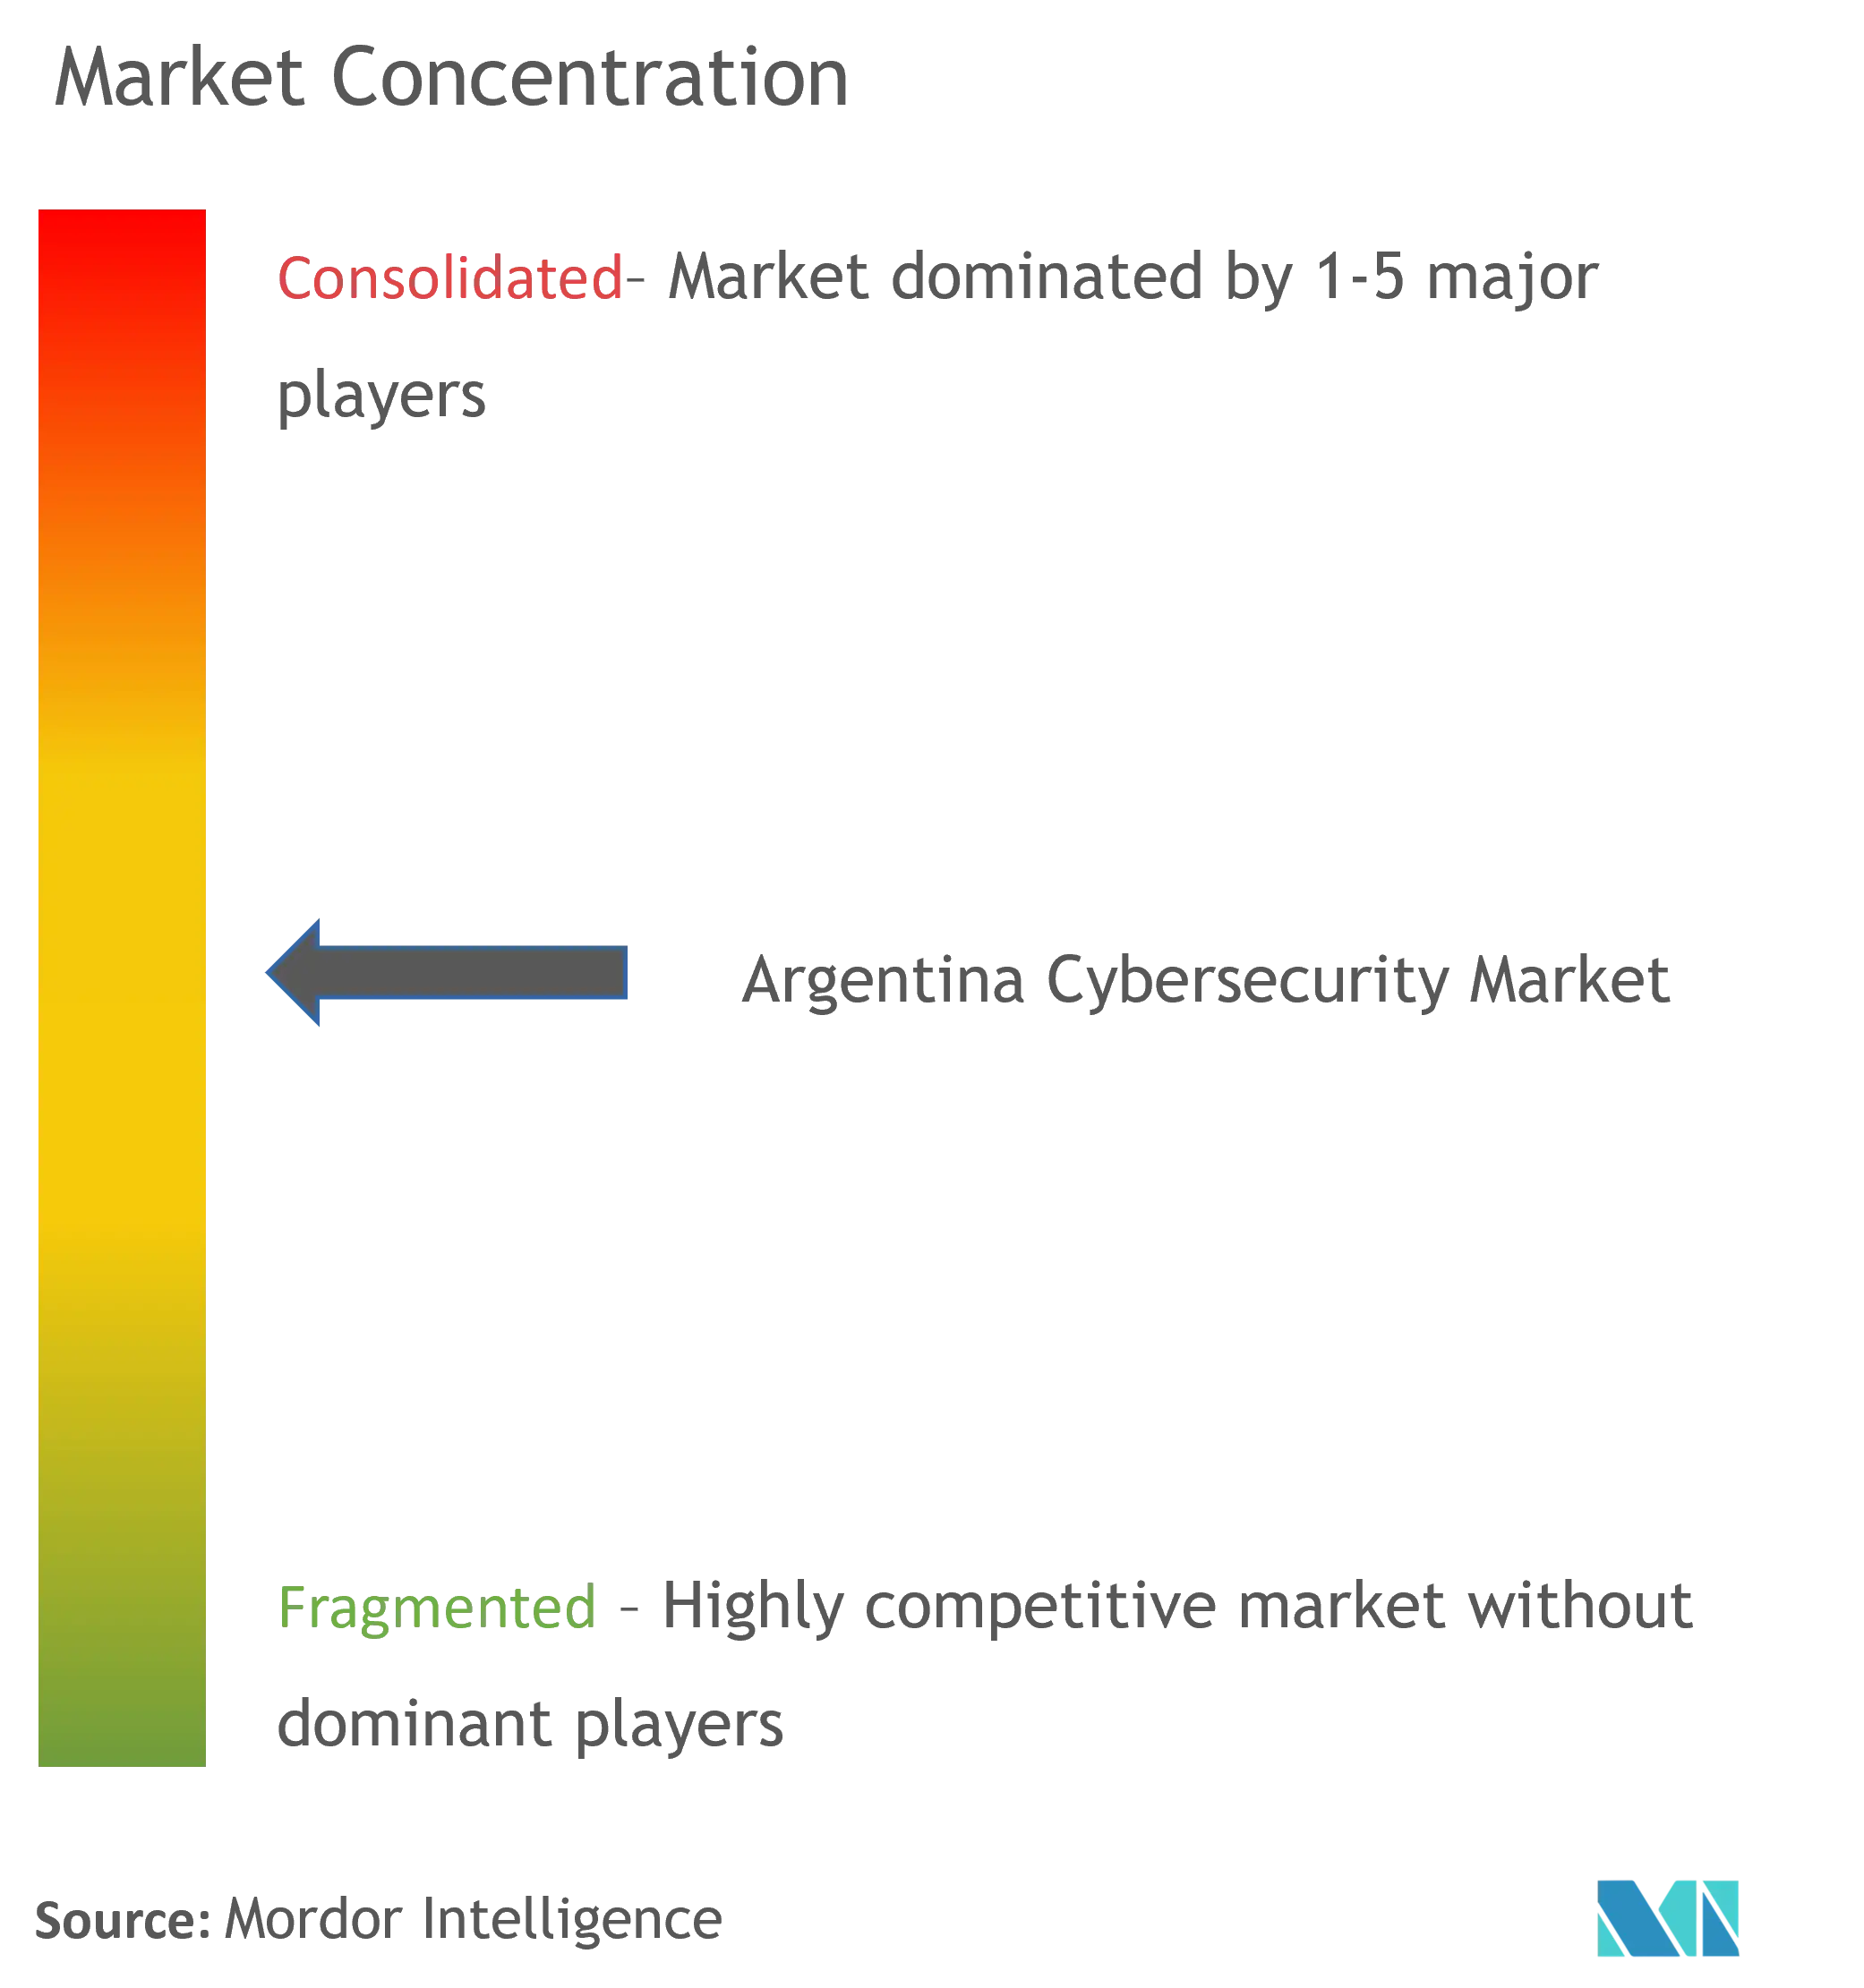 アルゼンチンのサイバーセキュリティ市場の集中度